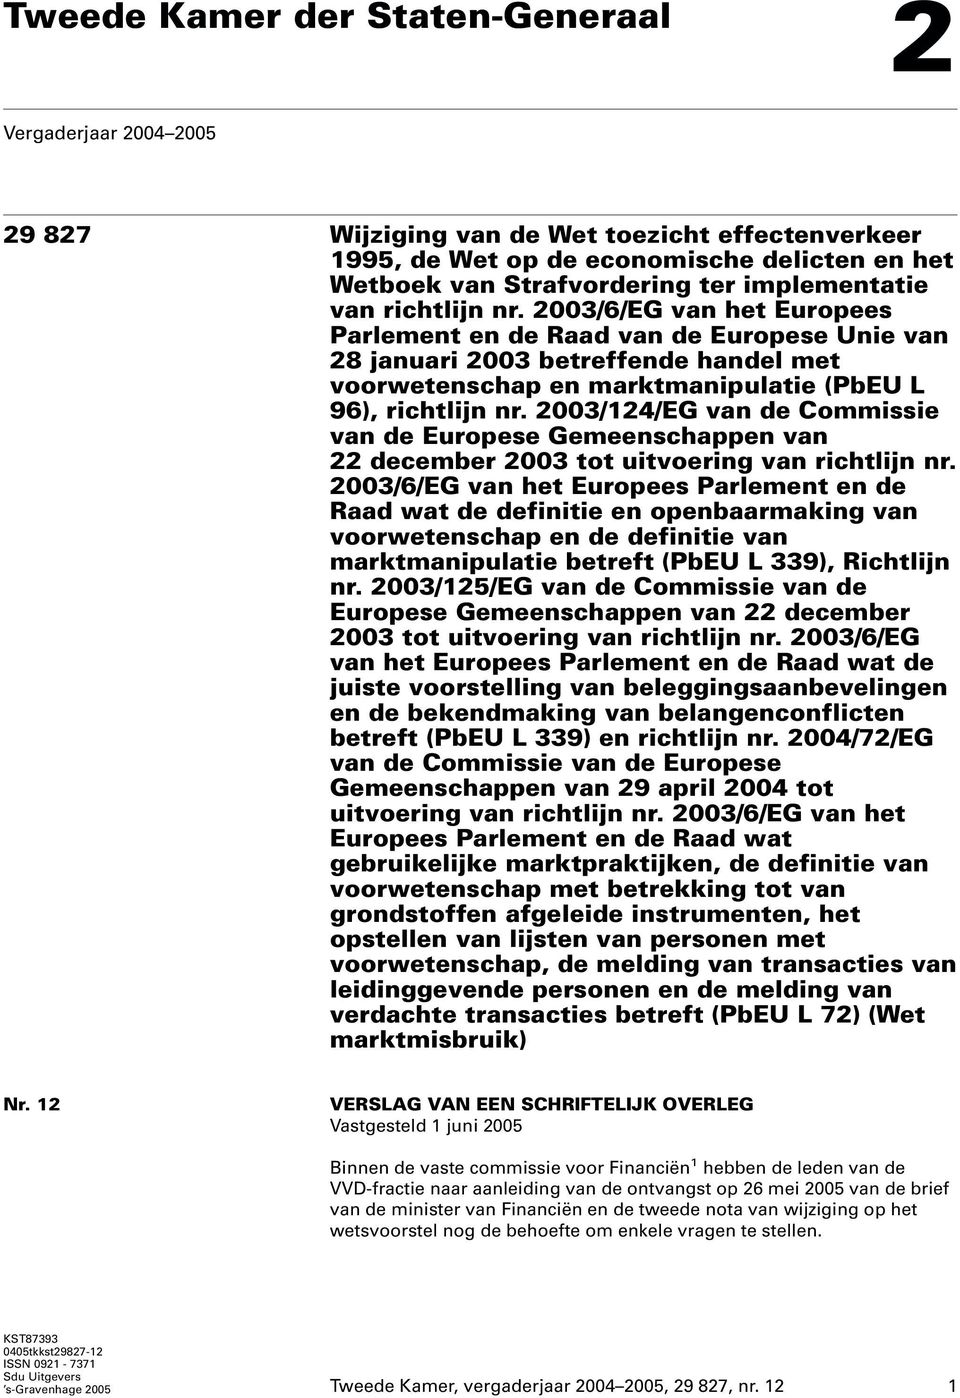 2003/6/EG van het Europees Parlement en de Raad van de Europese Unie van 28 januari 2003 betreffende handel met voorwetenschap en marktmanipulatie (PbEU L 96), richtlijn nr.